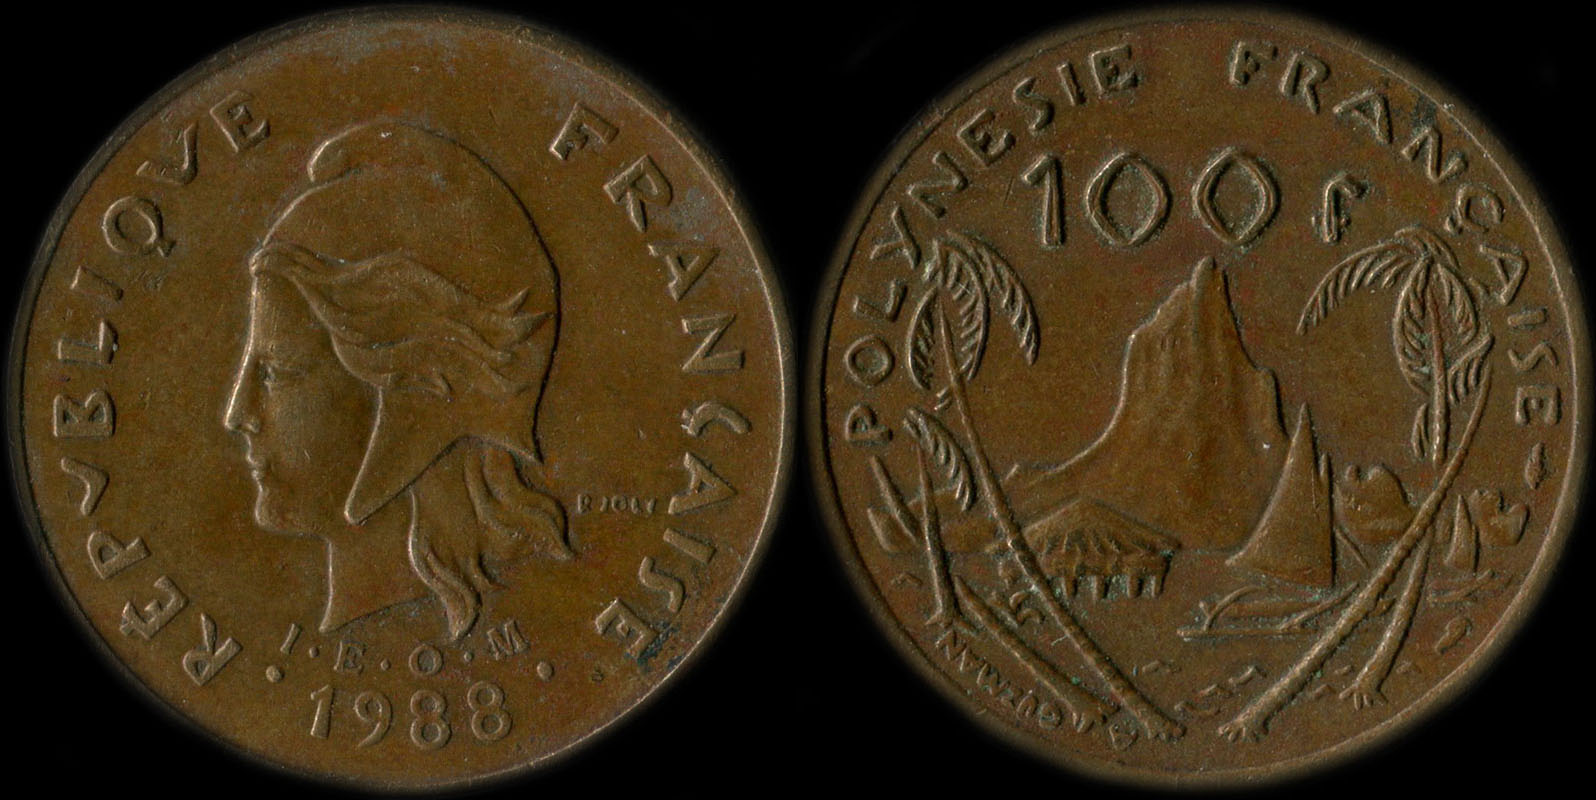 Pièce de 100 francs 1988 - I.E.O.M. Polynésie française